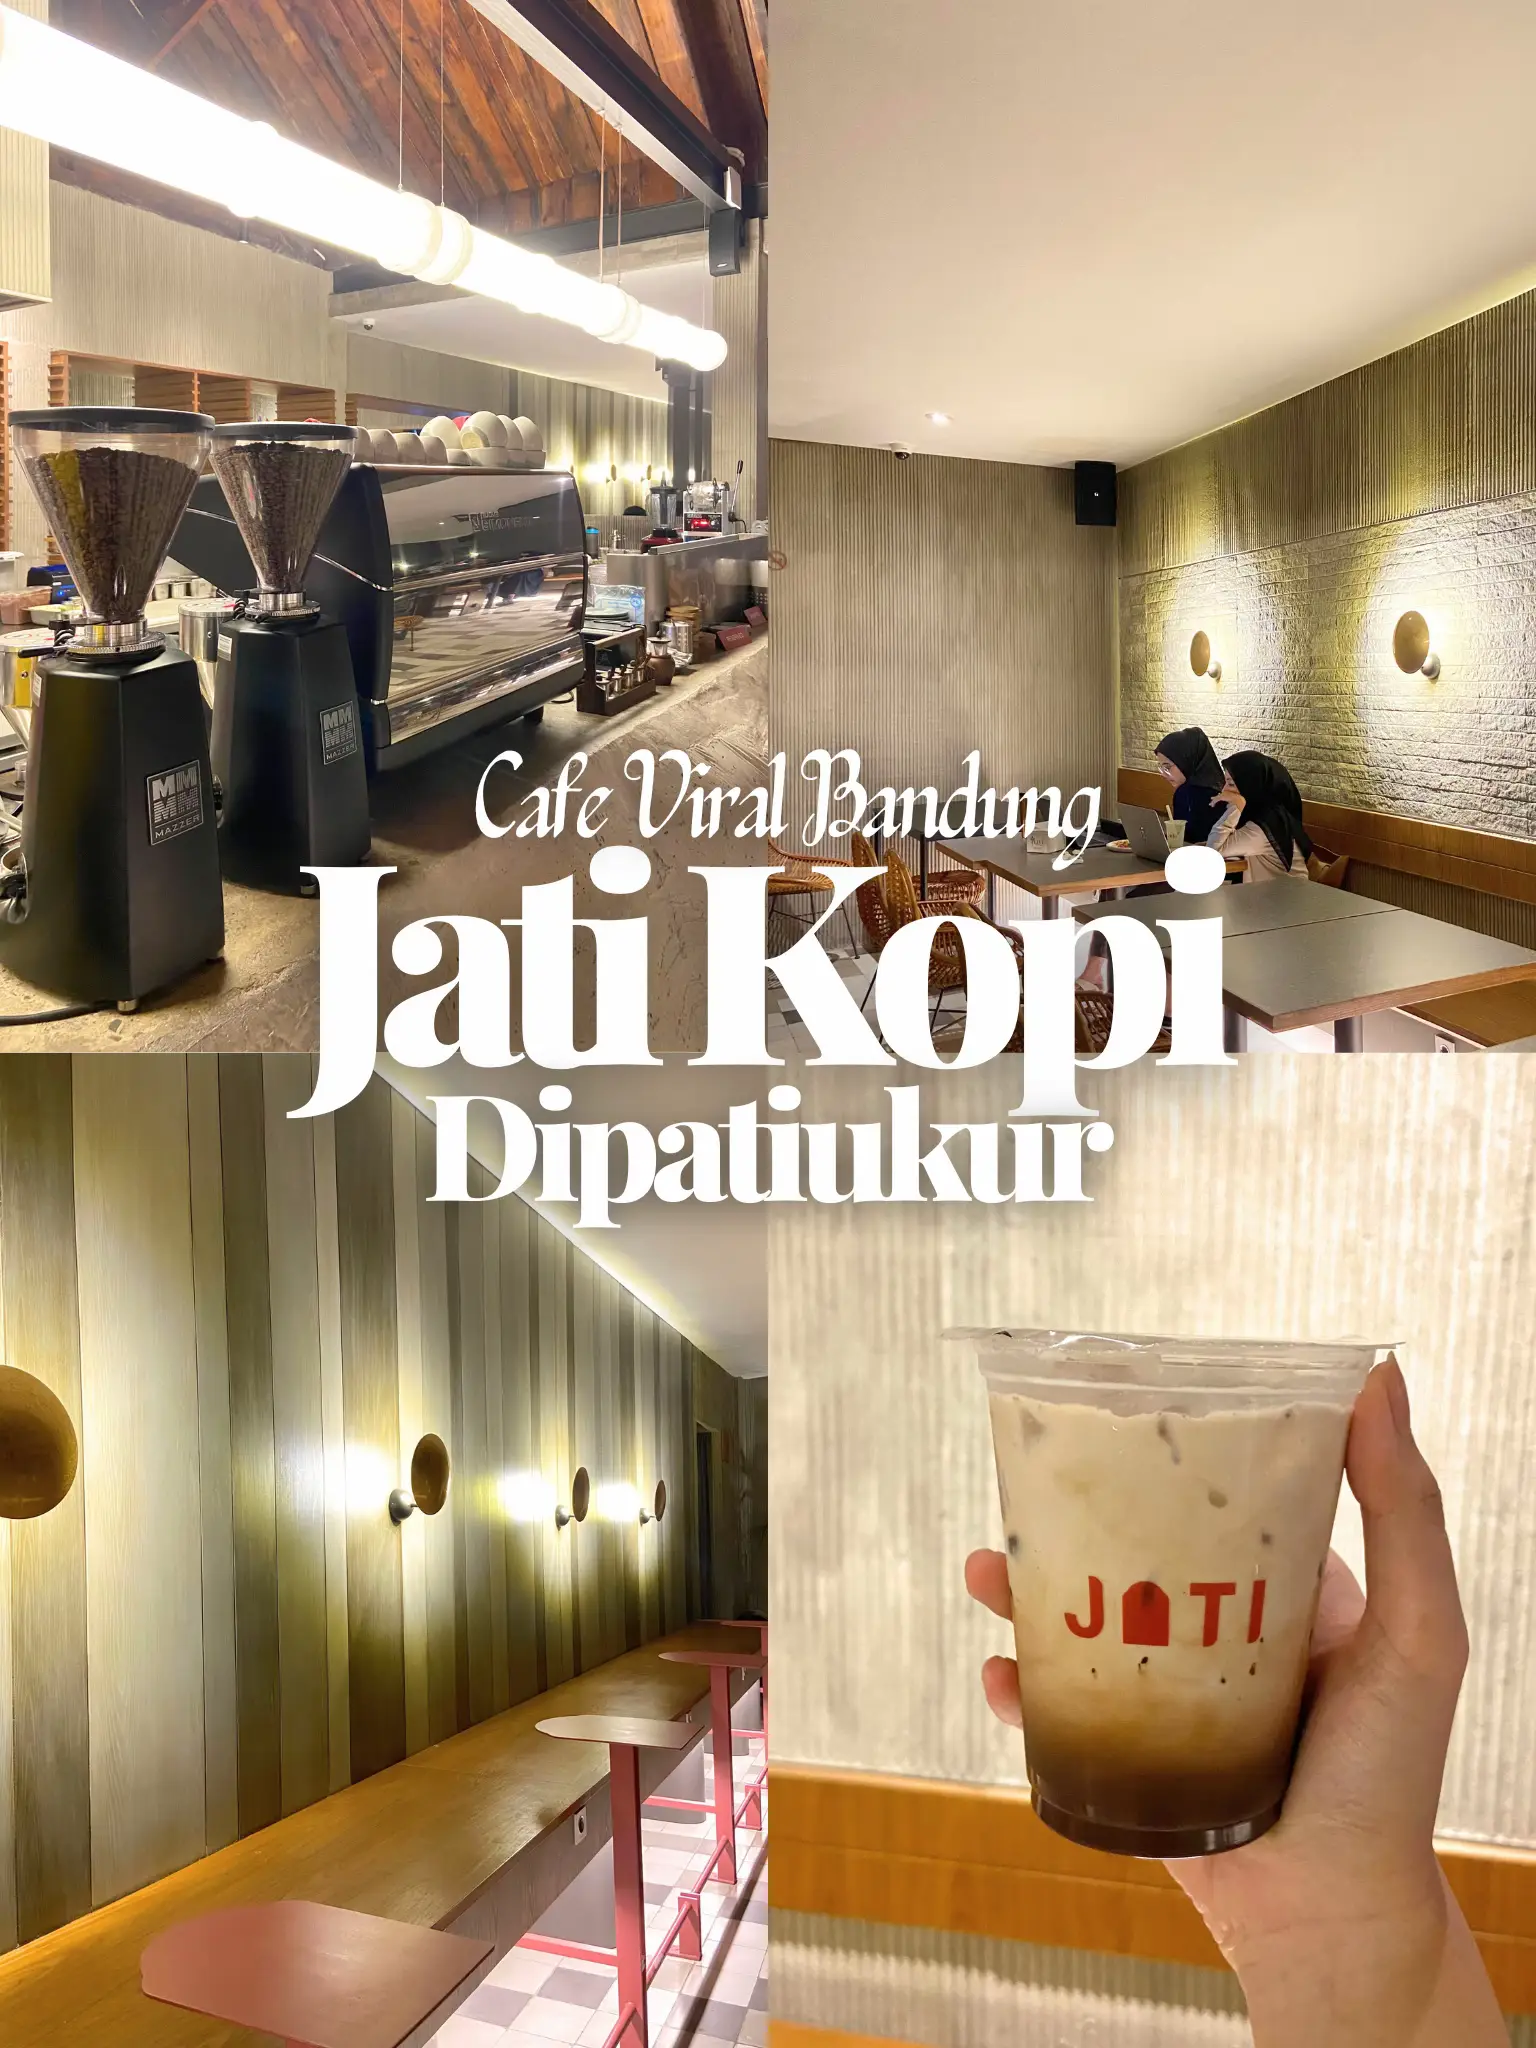 Cafe Viral Bandung! 's images